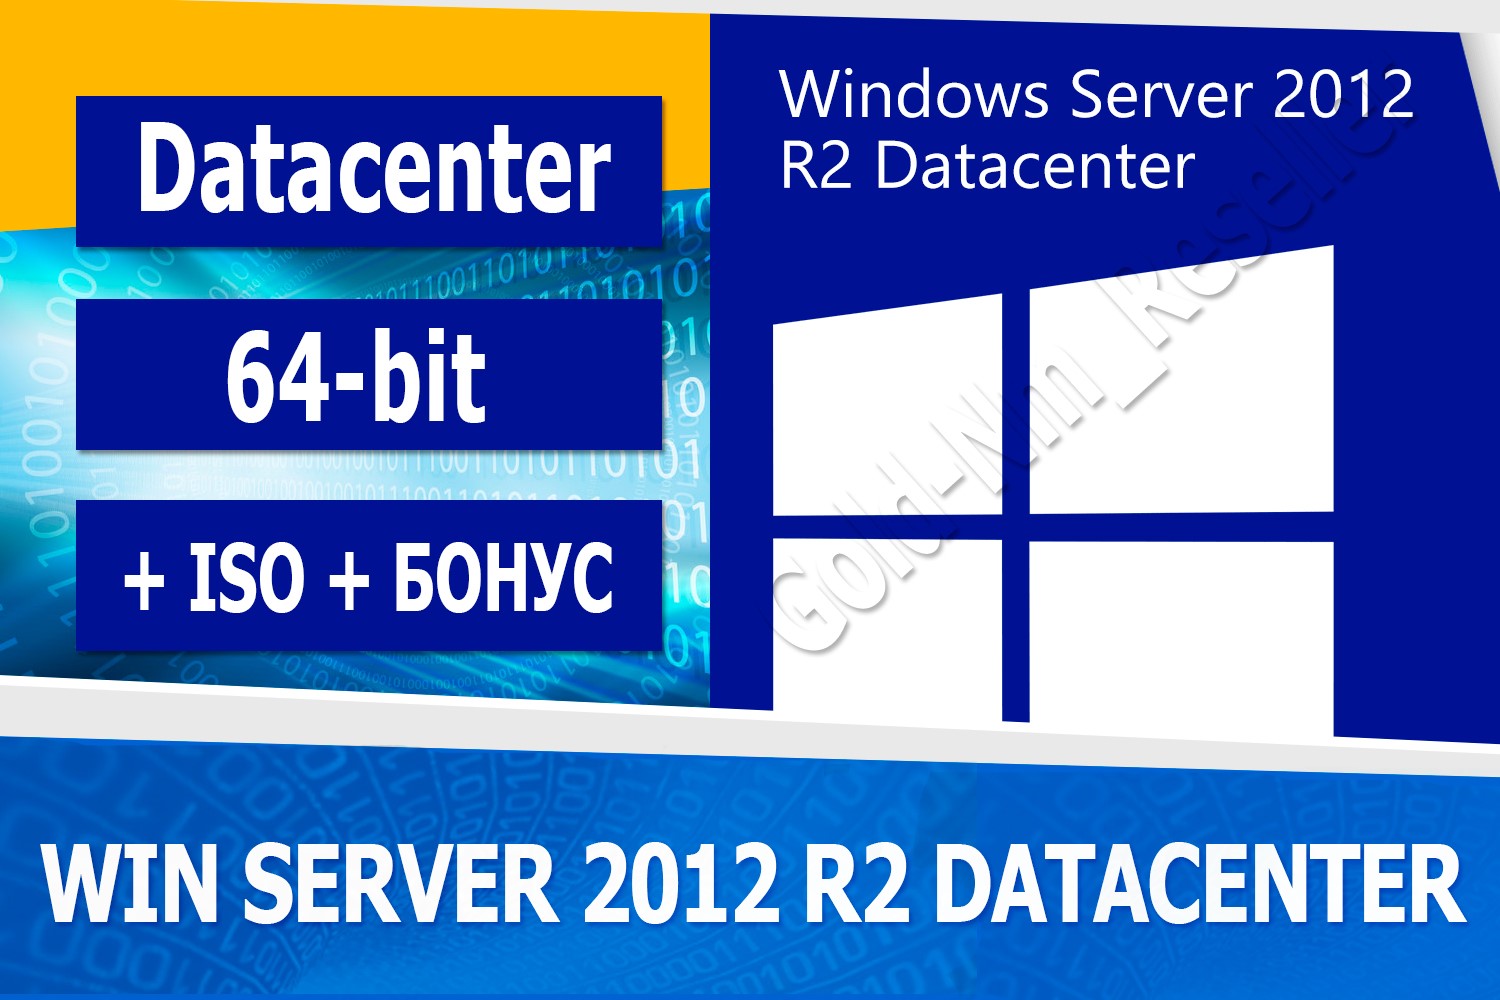 Buy Windows Server 2012 R2 Datacenter 64 Bit Iso Bonus For 697 On Gamecone 3172